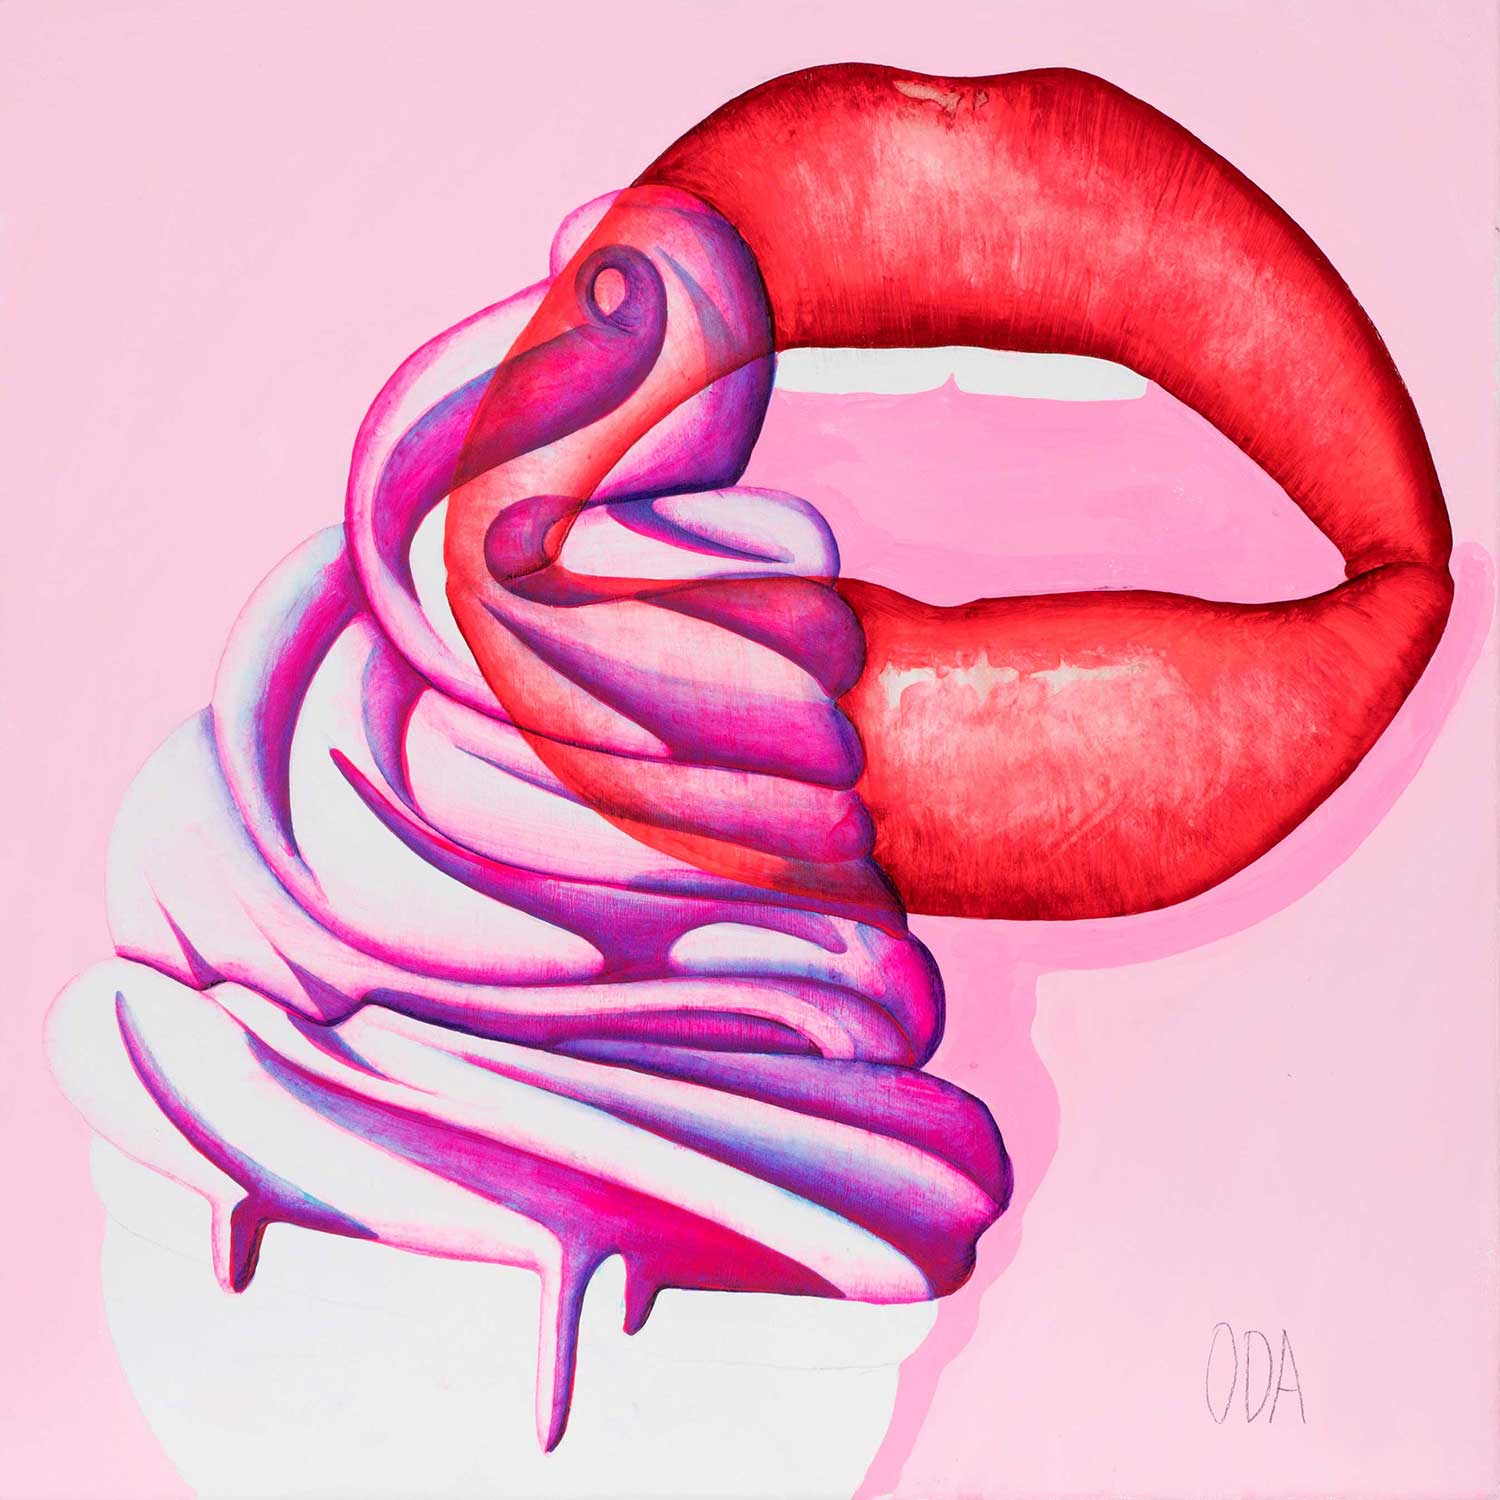 ODA-2017-Lips-Softeice-Pink-1500x1500_w